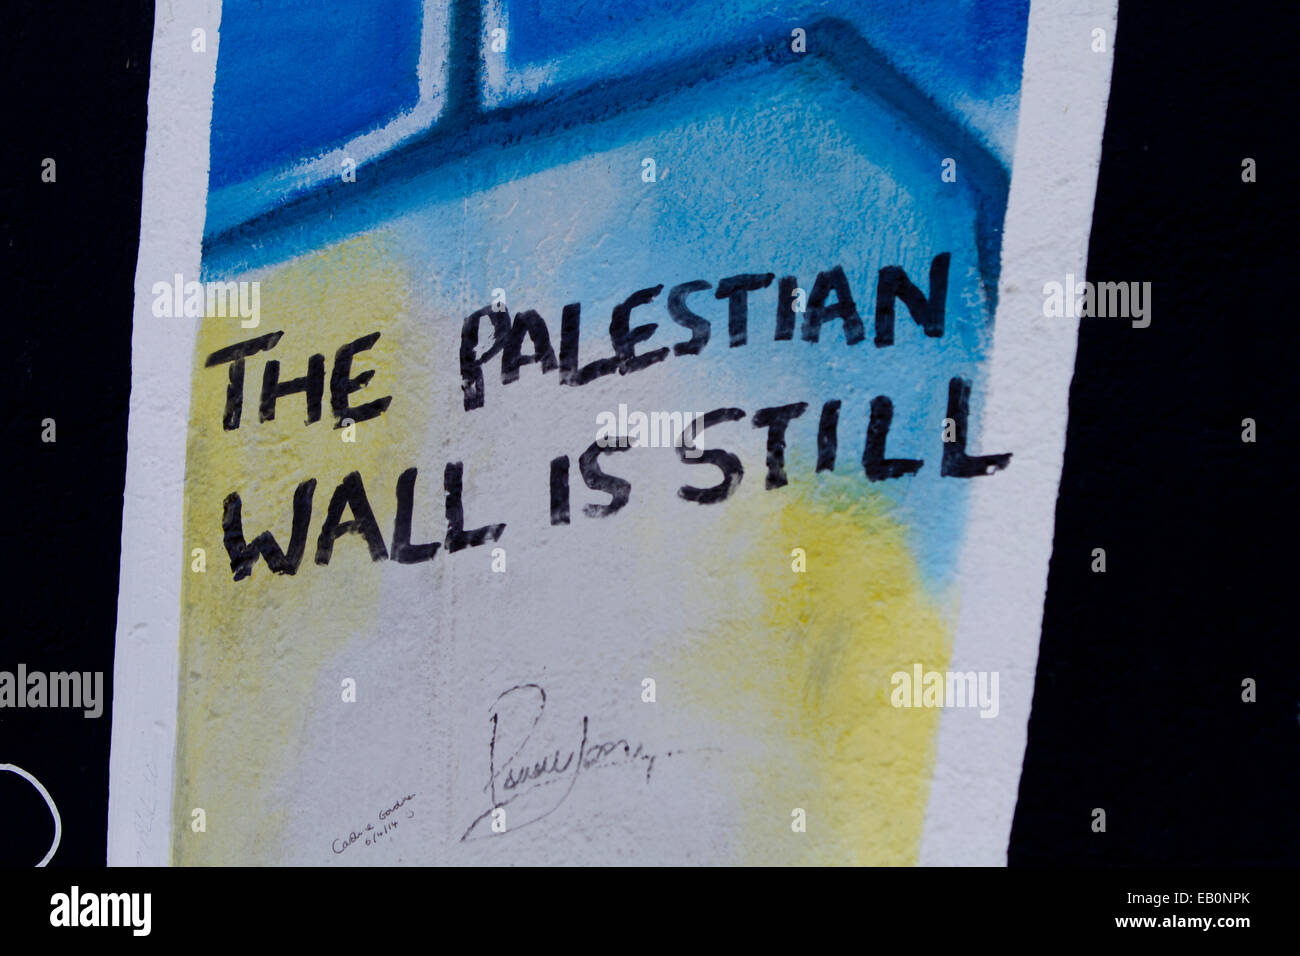 Graffiti street art Berlin wall the Palestian wall is still Stock Photo